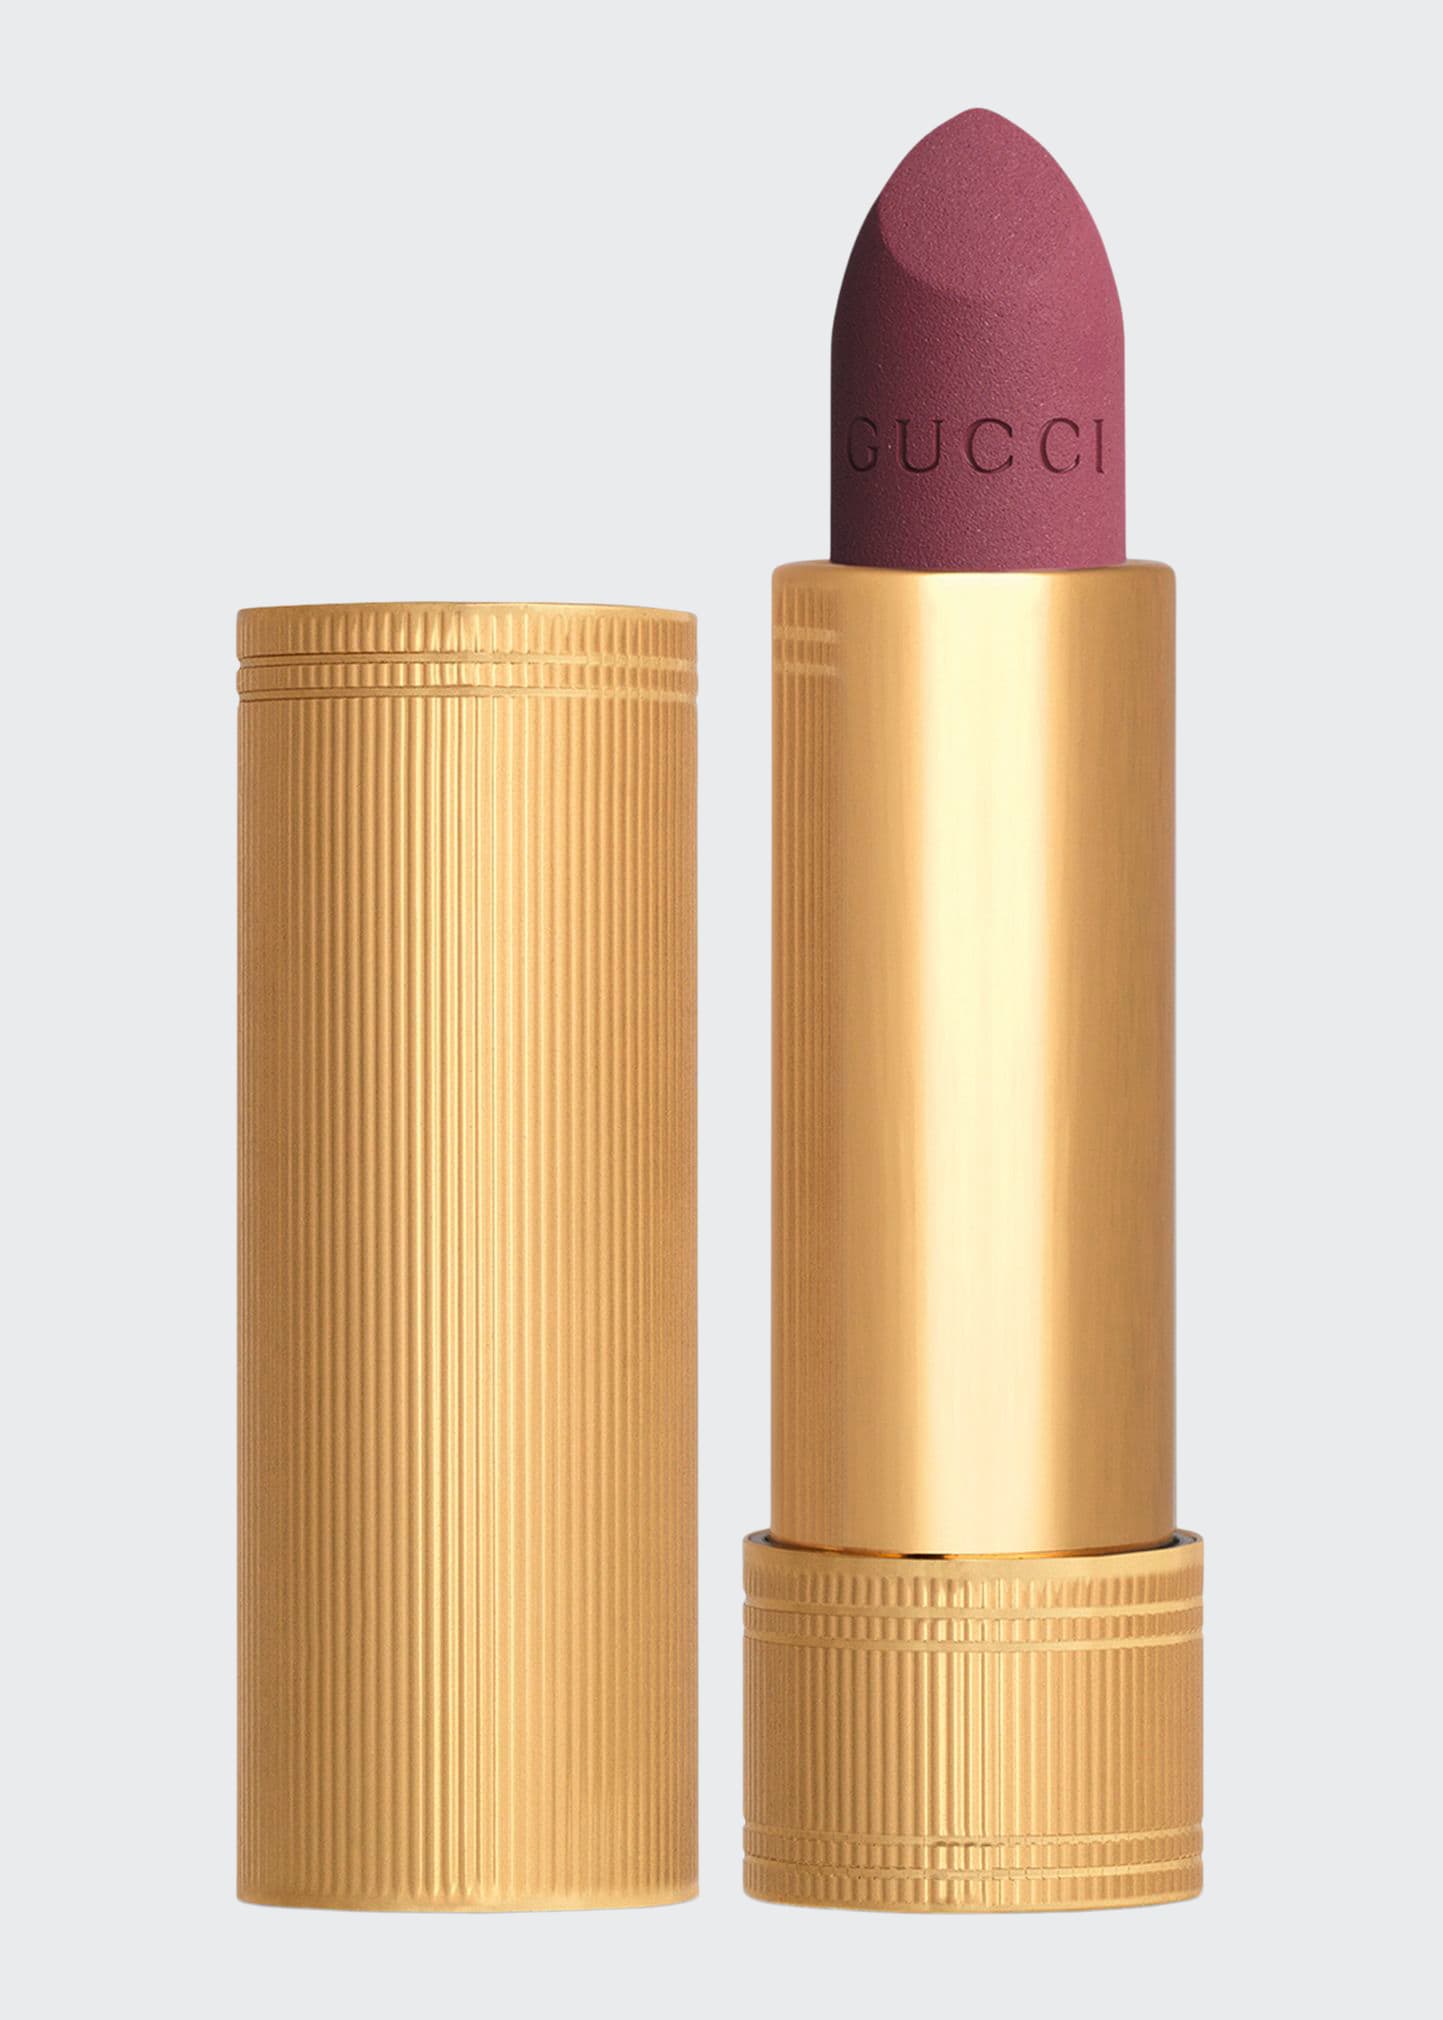 Gucci Rouge A Levres Matte Lipstick In 601 Fleur De Lis